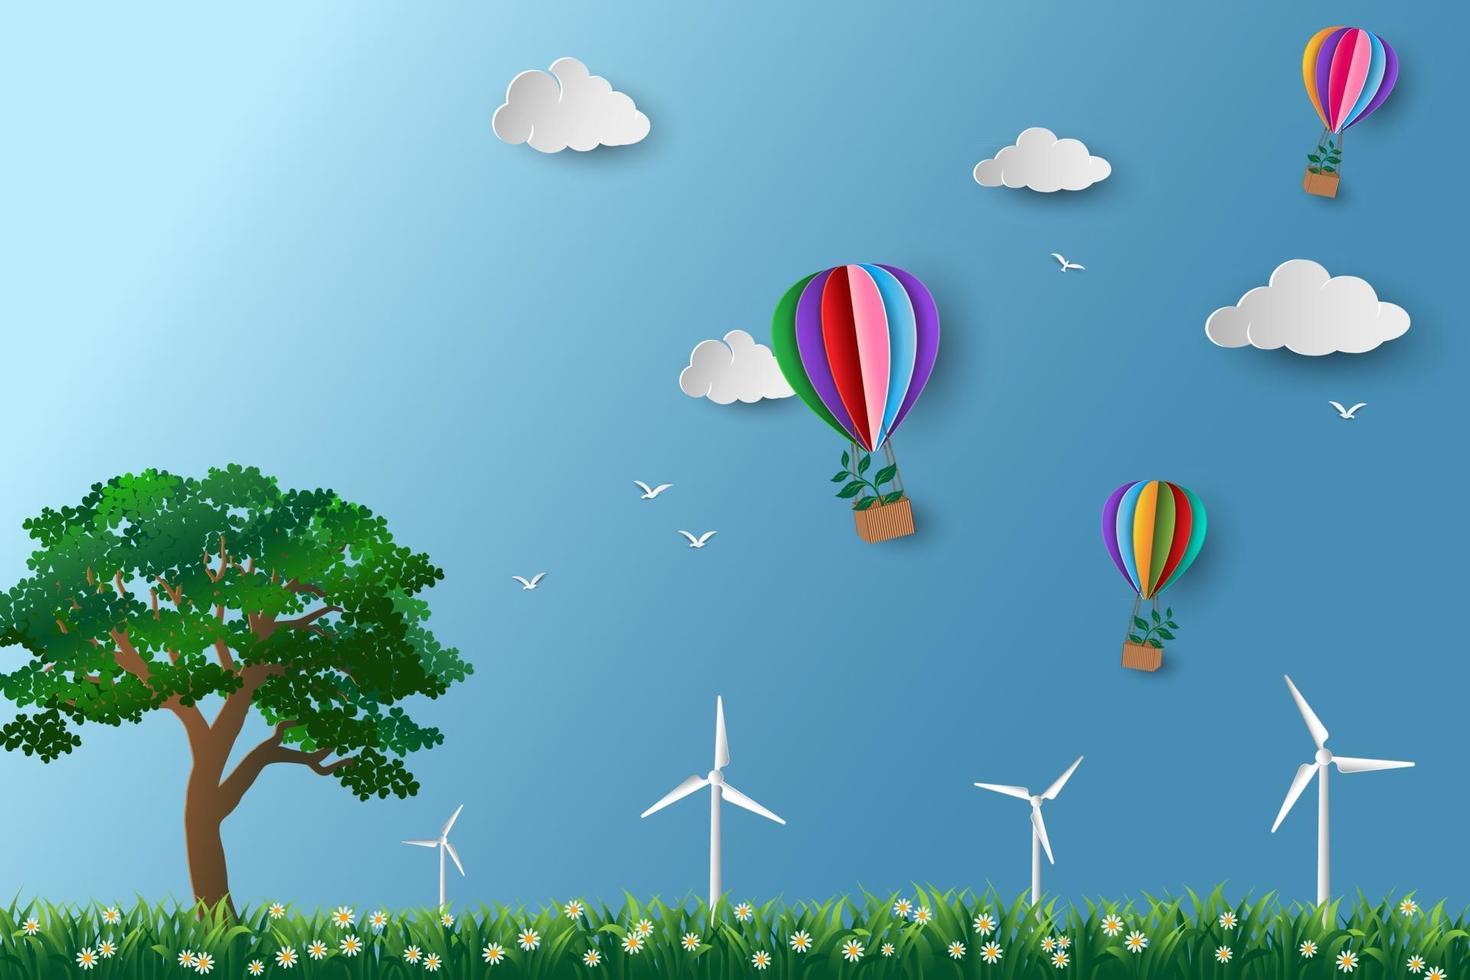 conceito de preservação do meio ambiente e eco-friendly balão de ar quente colorido com árvore voando sobre o prado papel arte design vetor